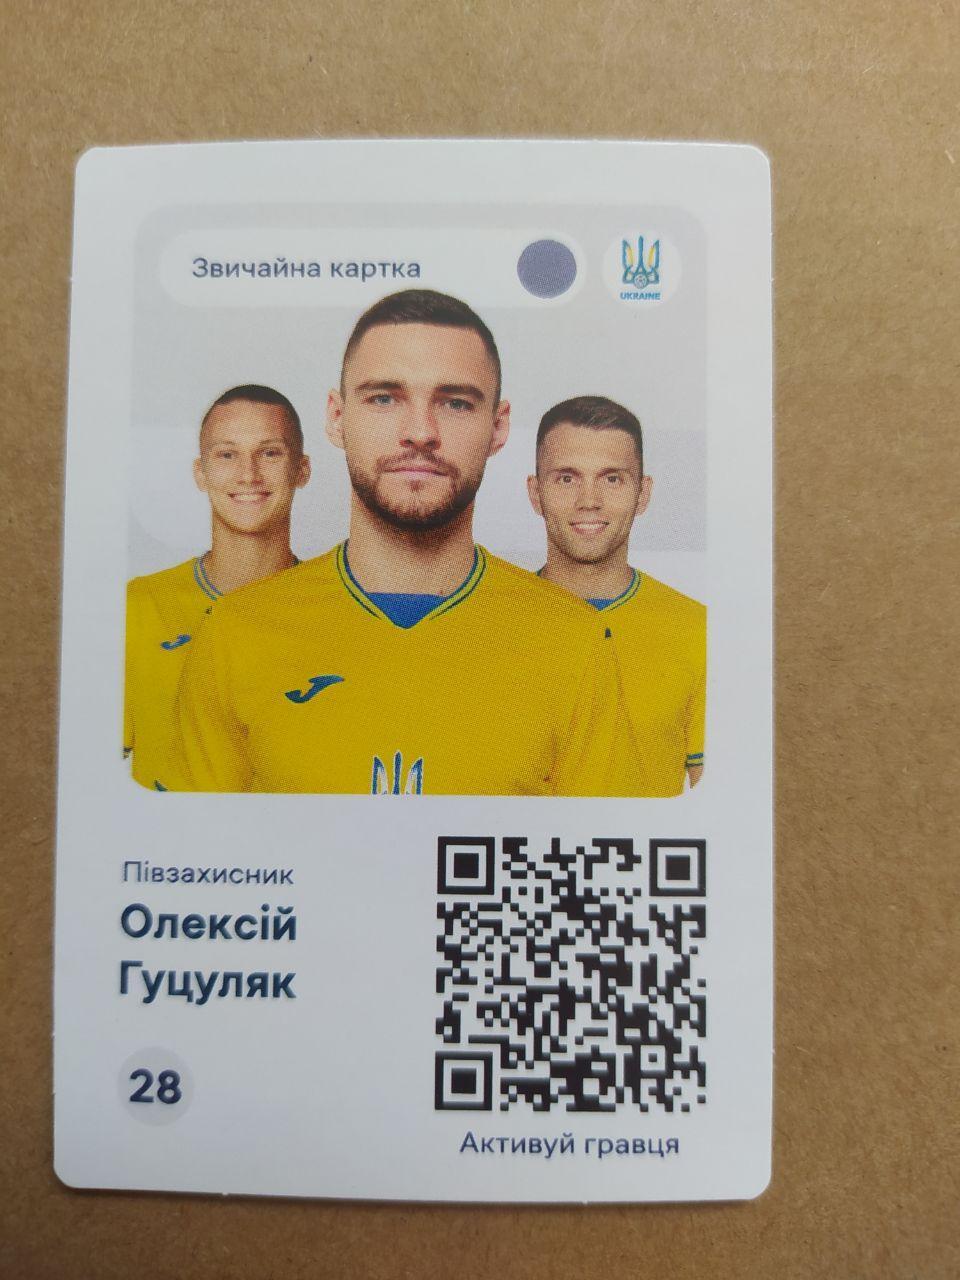 Чемпіонат по футболу ЕВРО-2024 півзахисник Олексій Гуцуляк Україна № 28